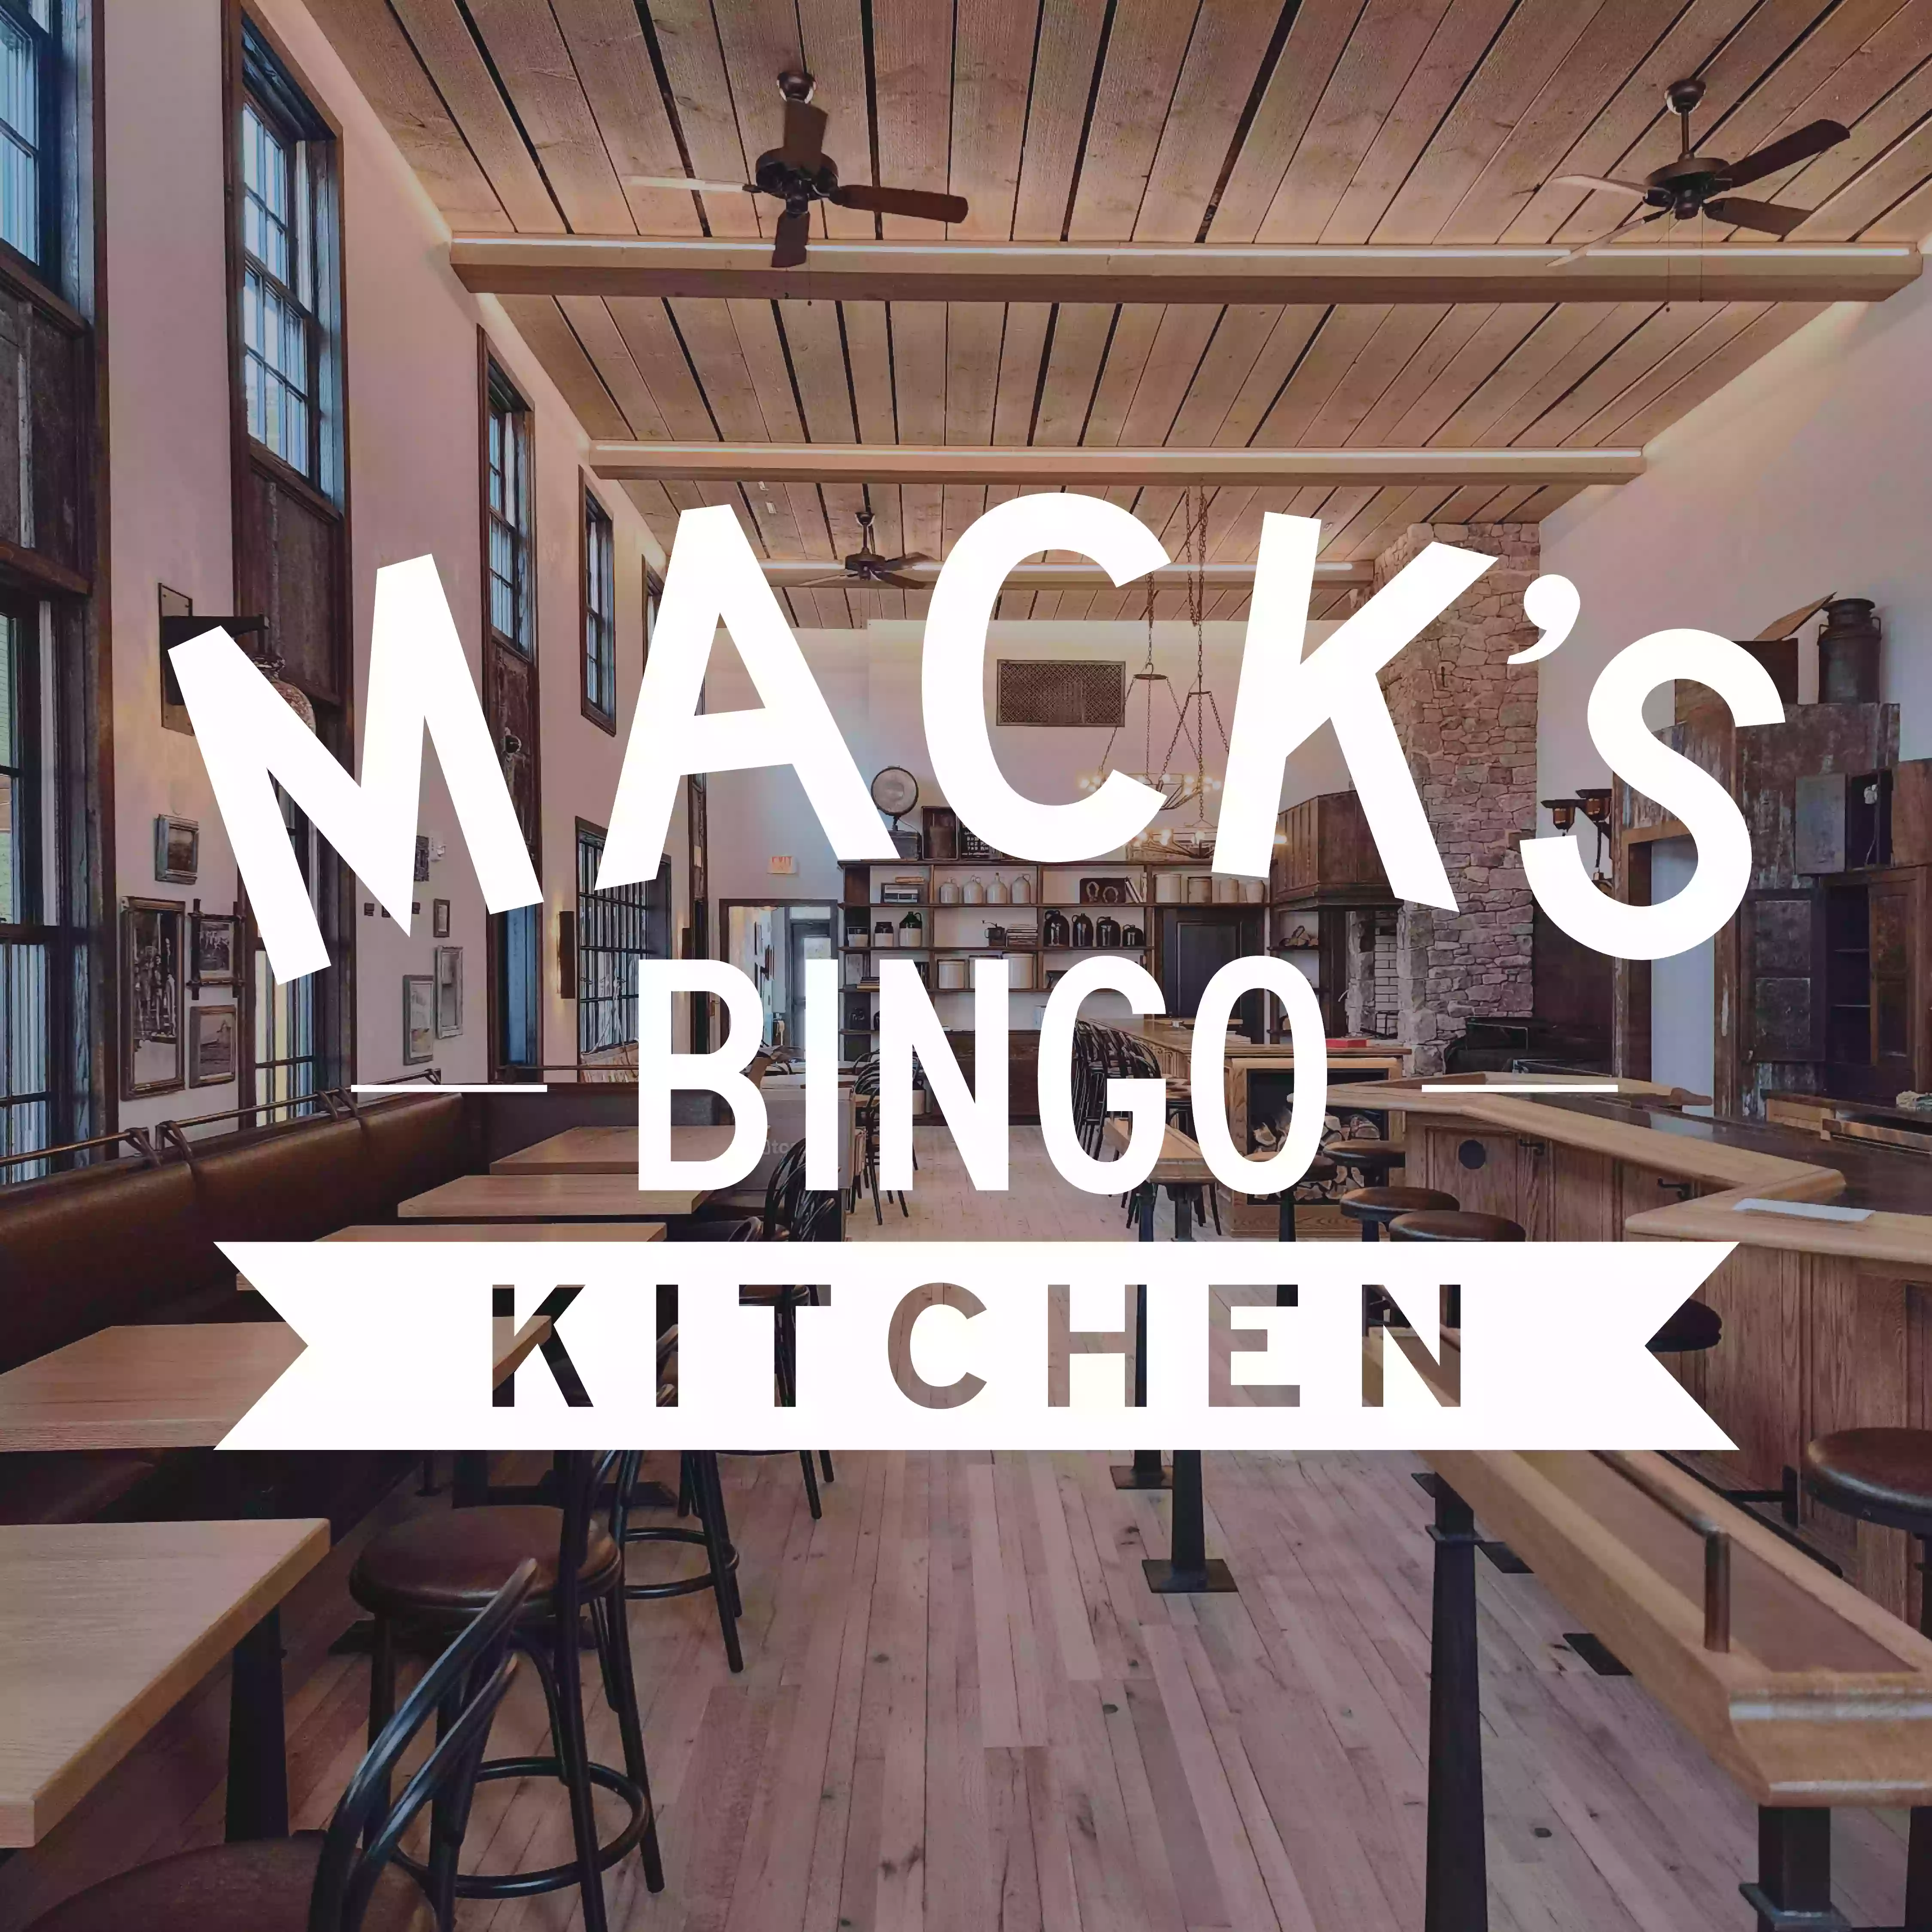 Mack's Bingo Kitchen